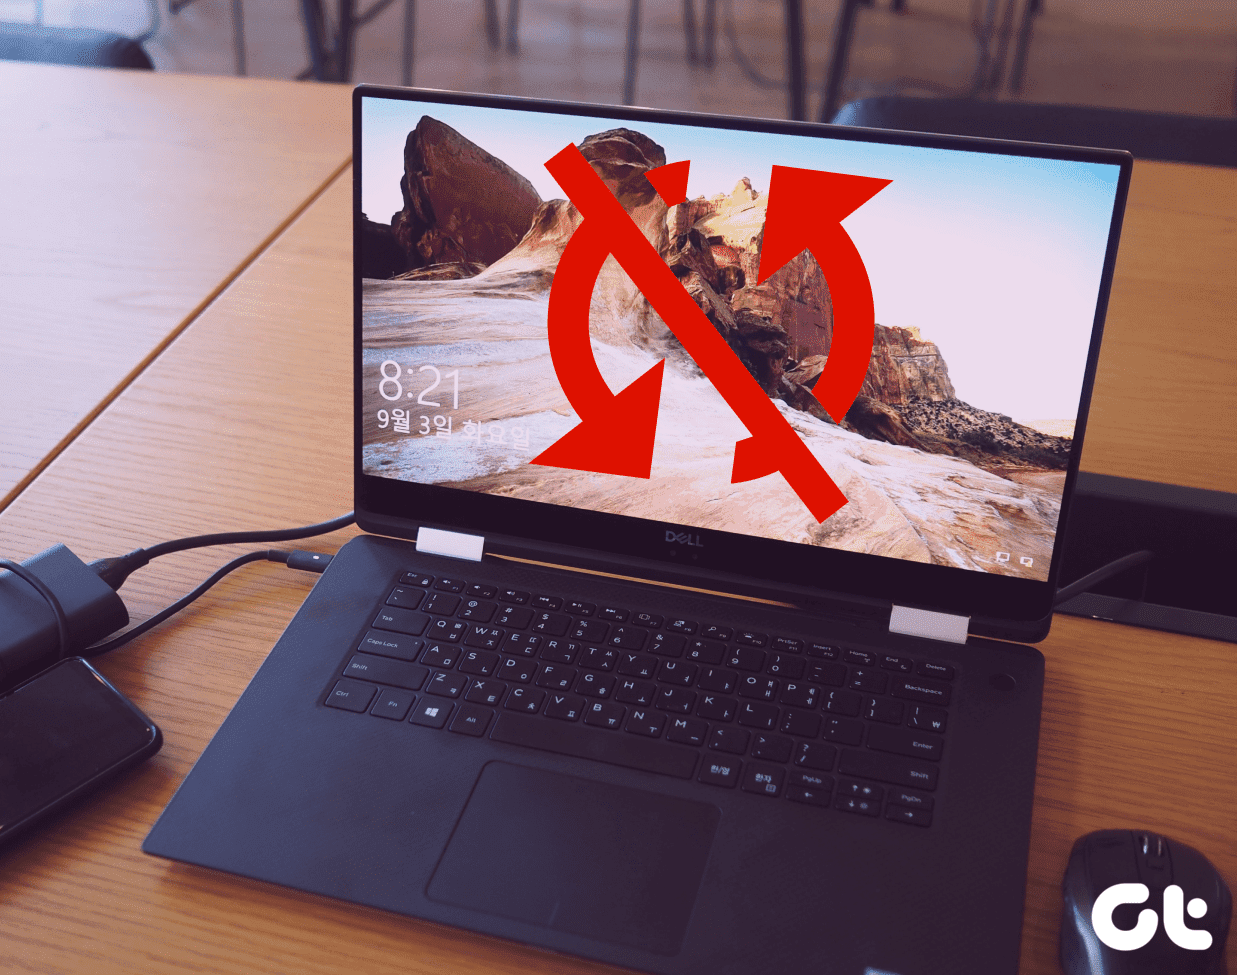 8 soluciones para "A su dispositivo le faltan correcciones importantes de seguridad y calidad" en Windows